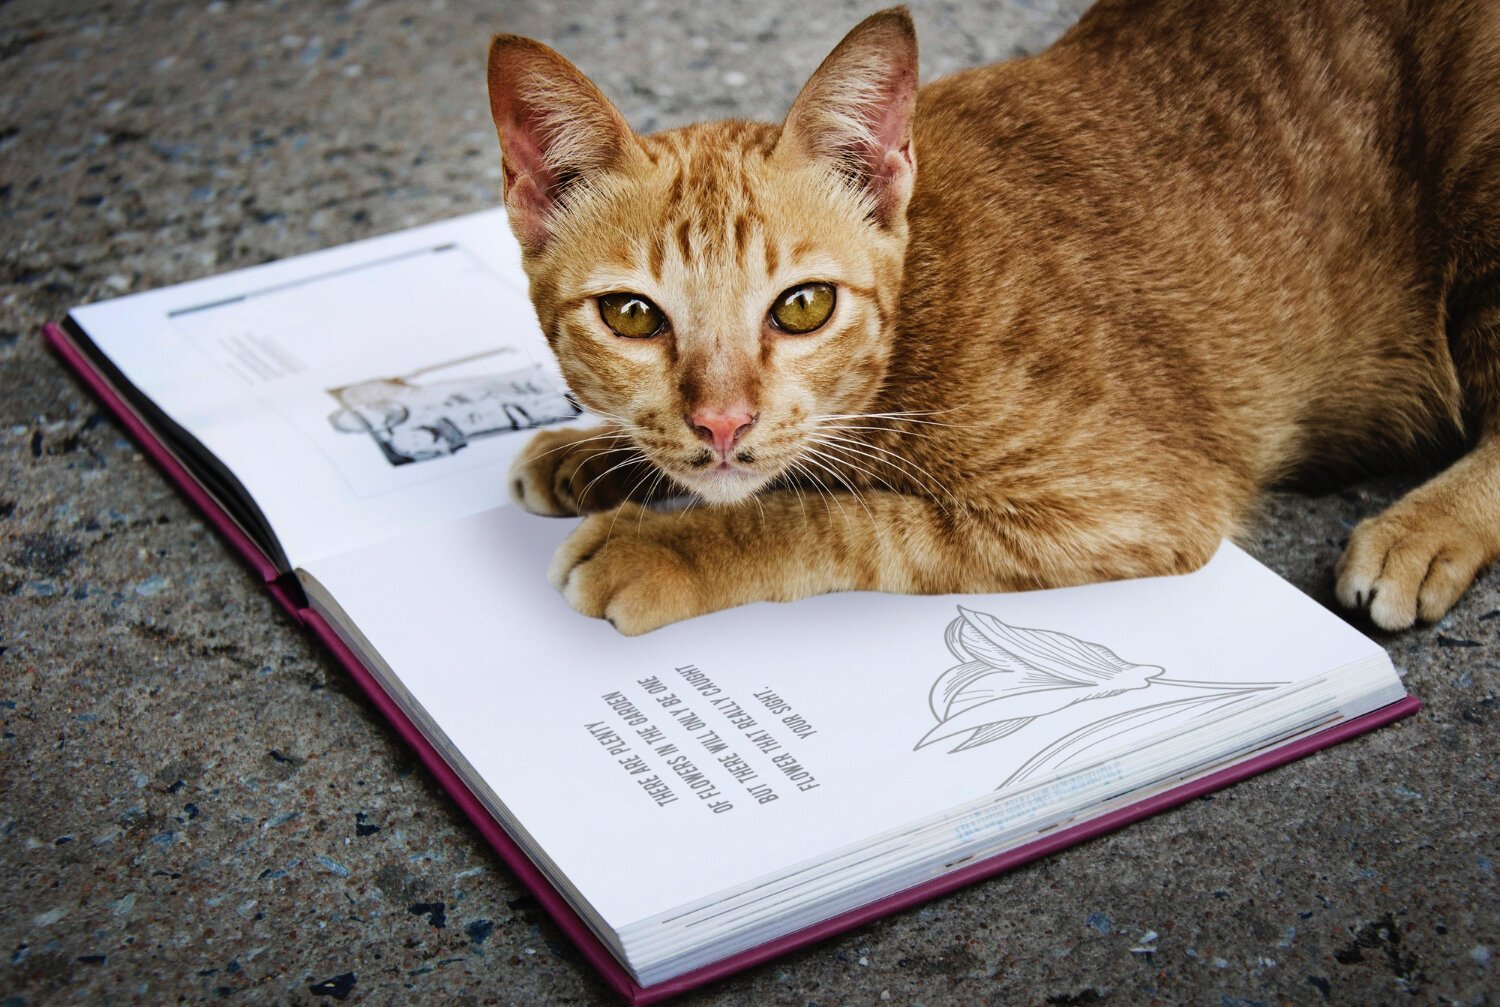 açık kitabın üzerine patilerini koyup uzanan kedi